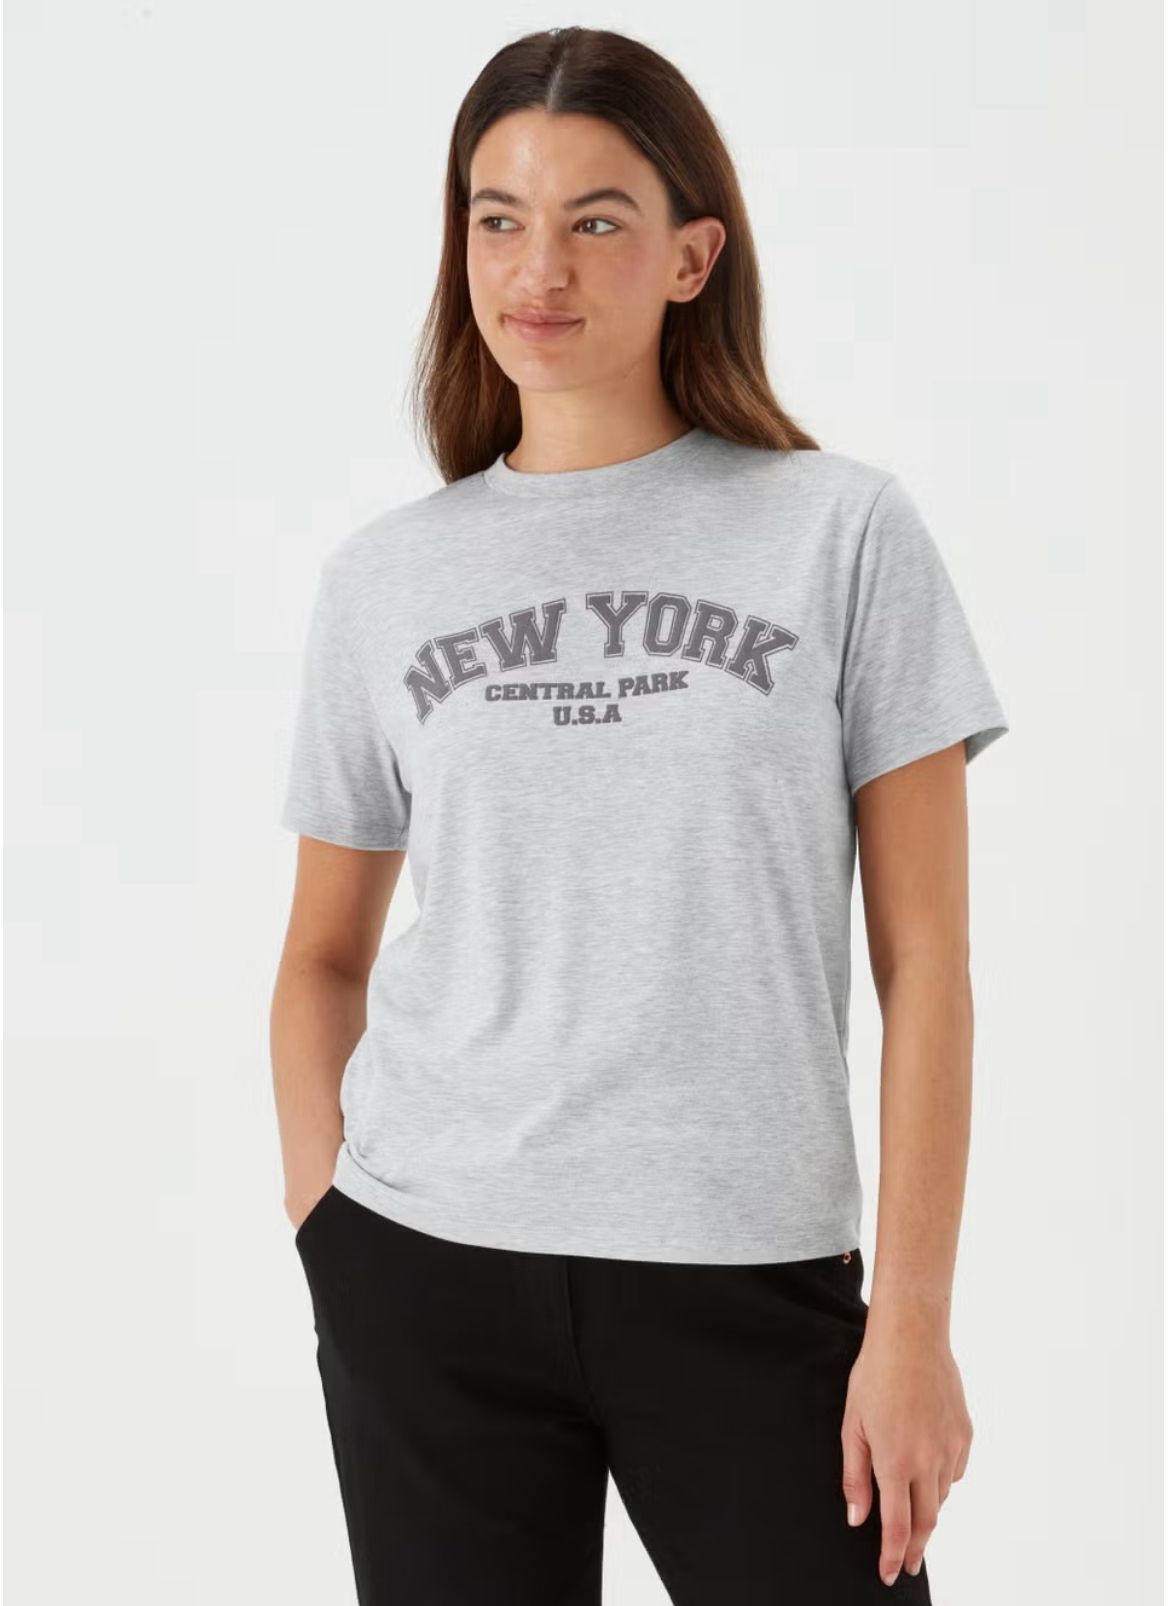 PPY New York Tshirt